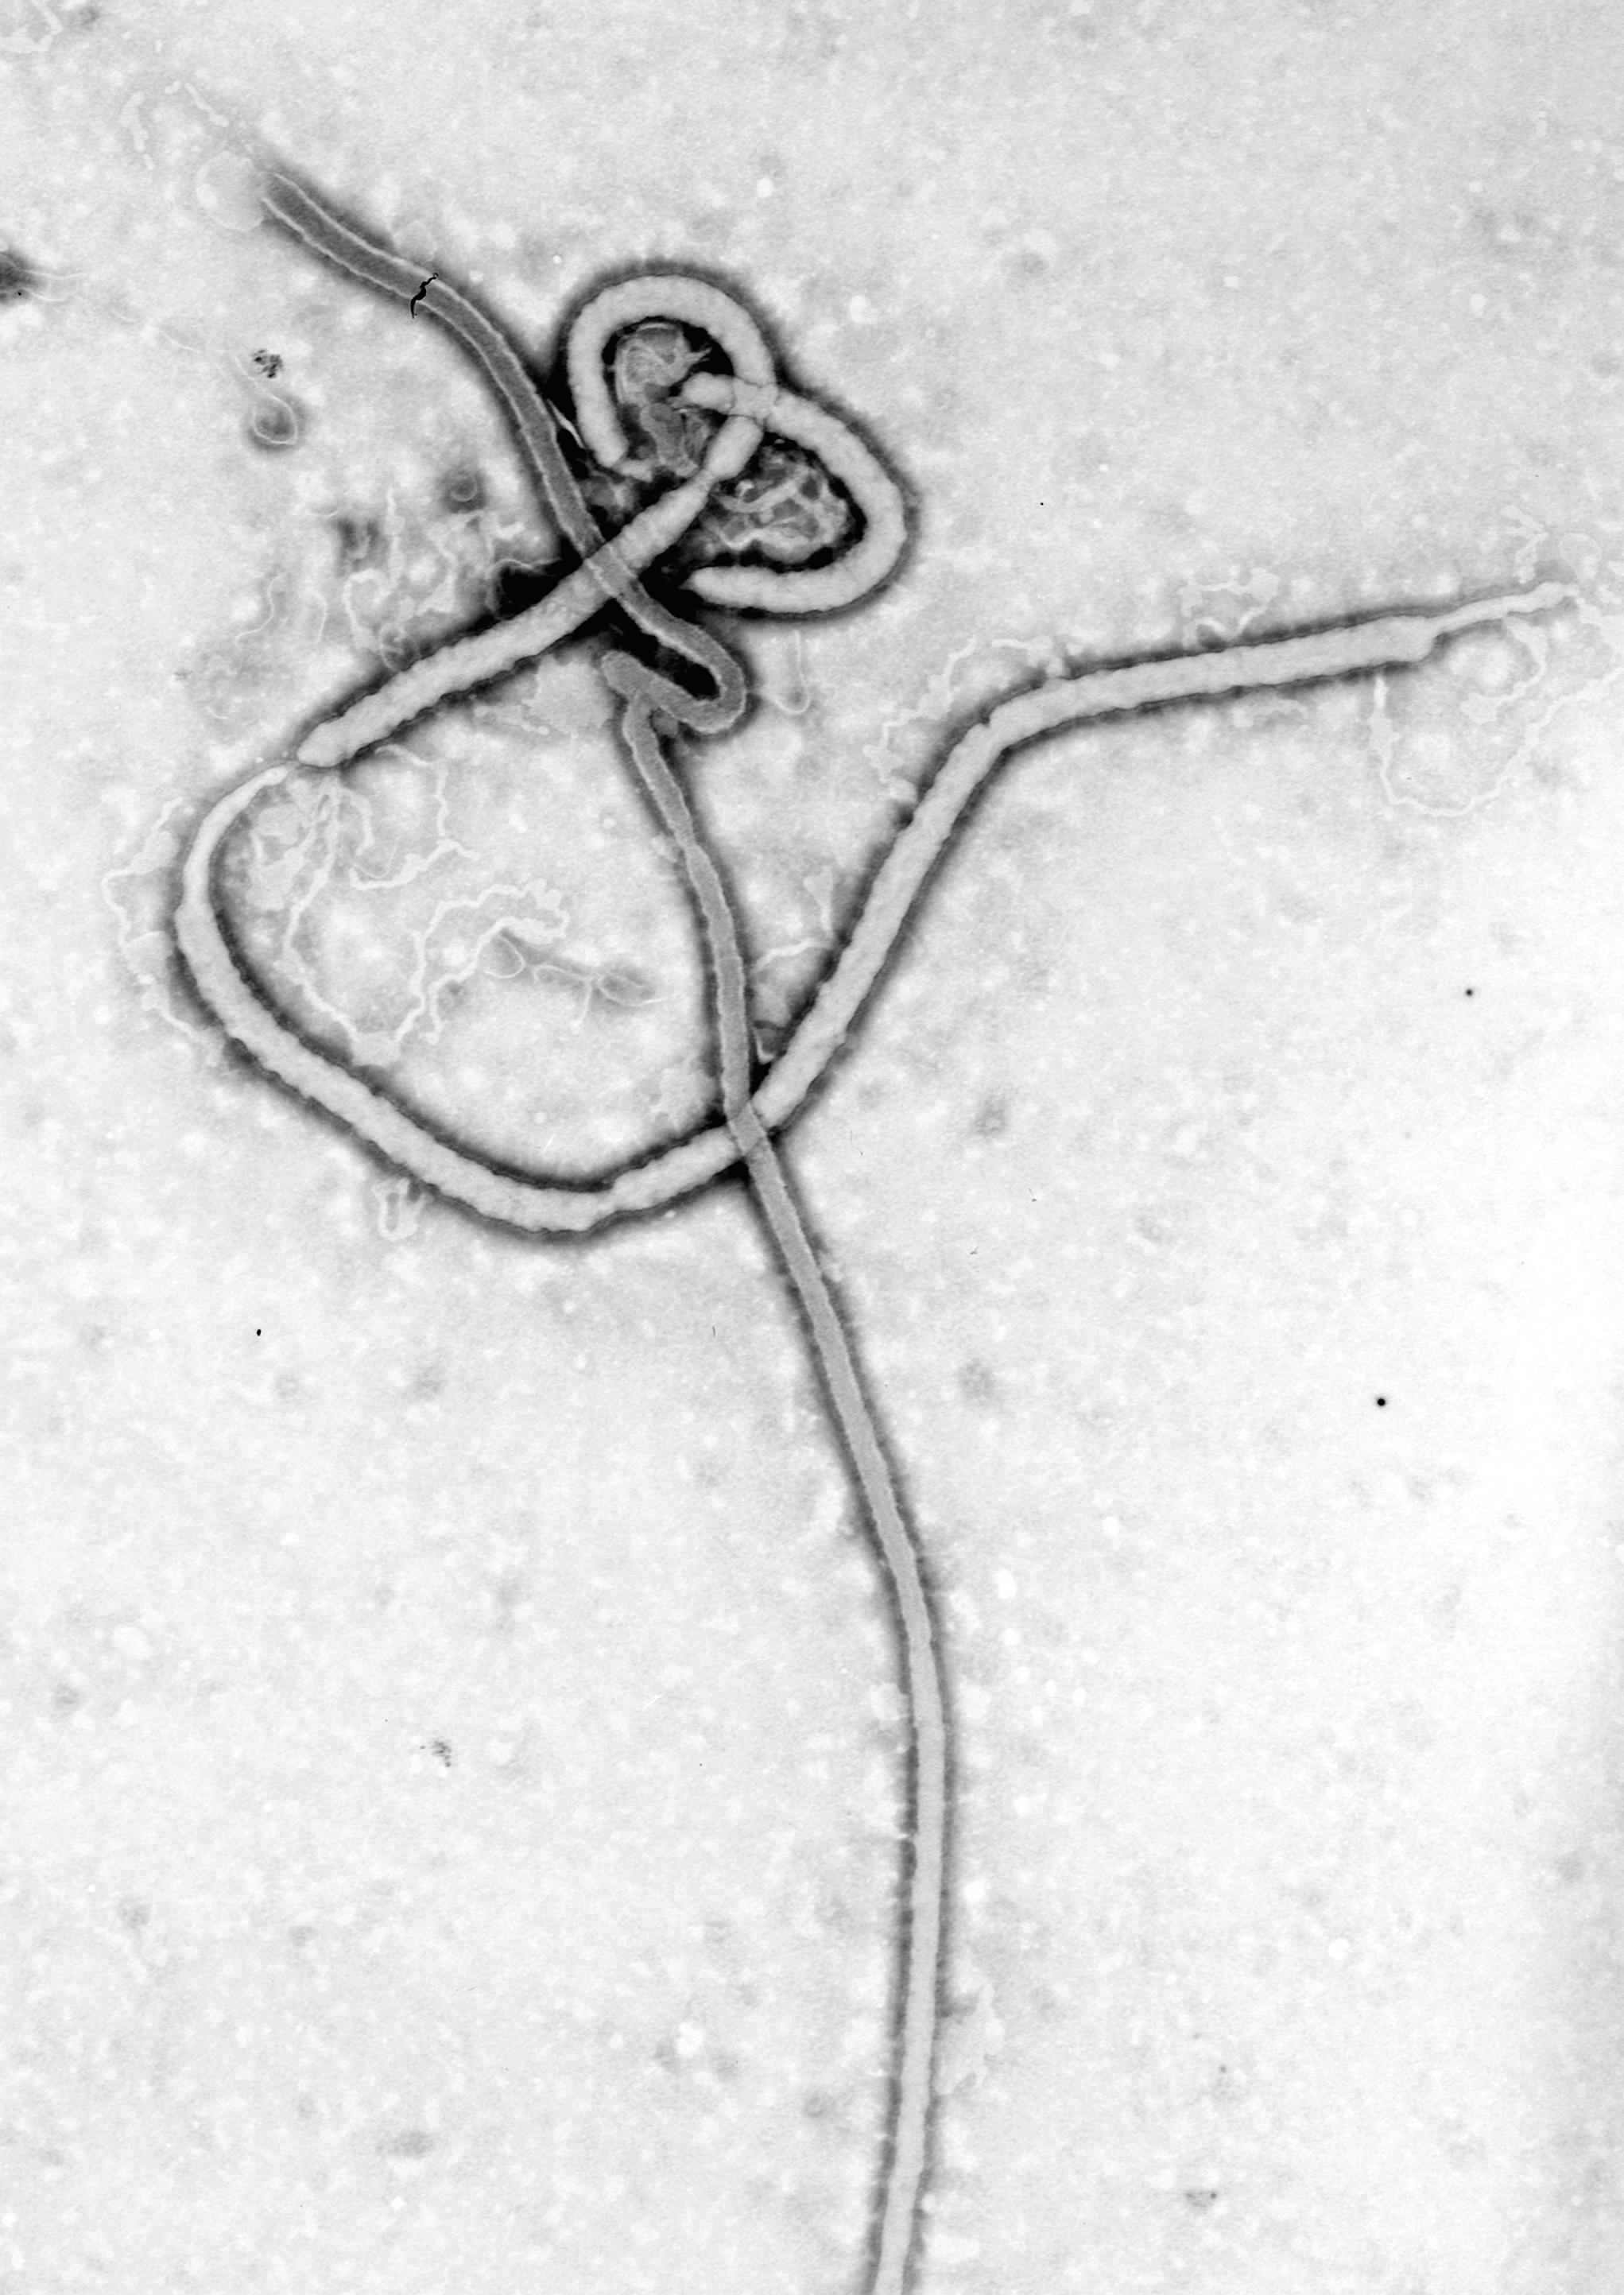 Electron microscope image of ebola virus